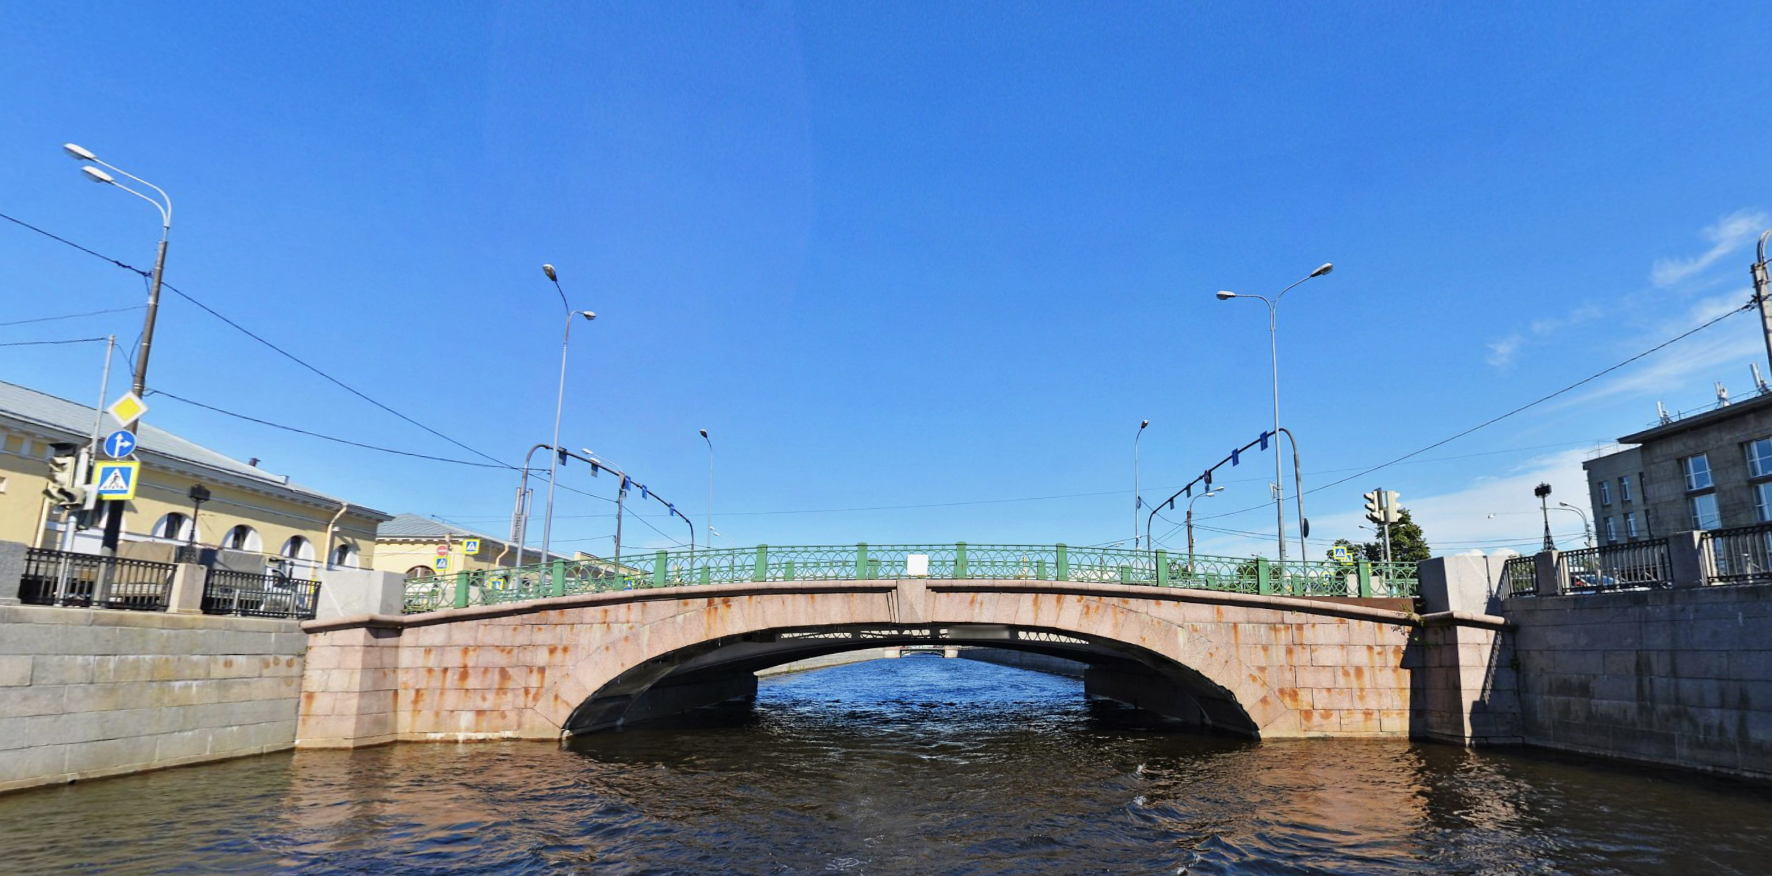 Мосты обводного канала